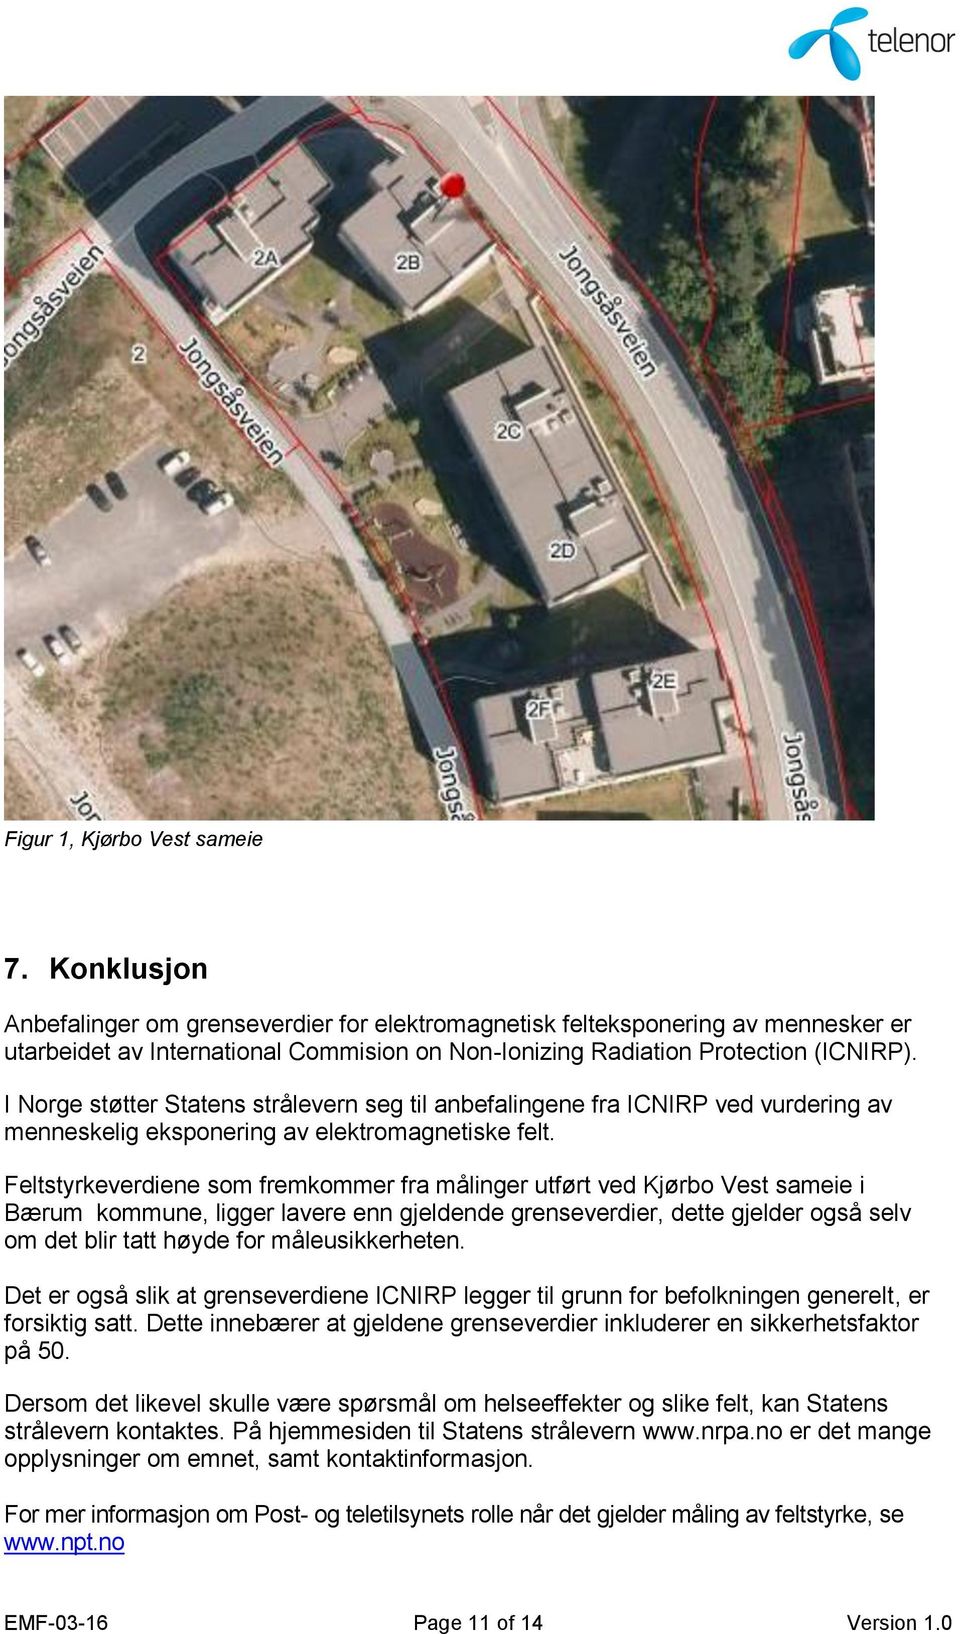 MÅLERAPPORT. Måling av radiofrekvent eksponering fra basestasjon:  JONGSÅSVEIEN-2 Bærum - PDF Free Download